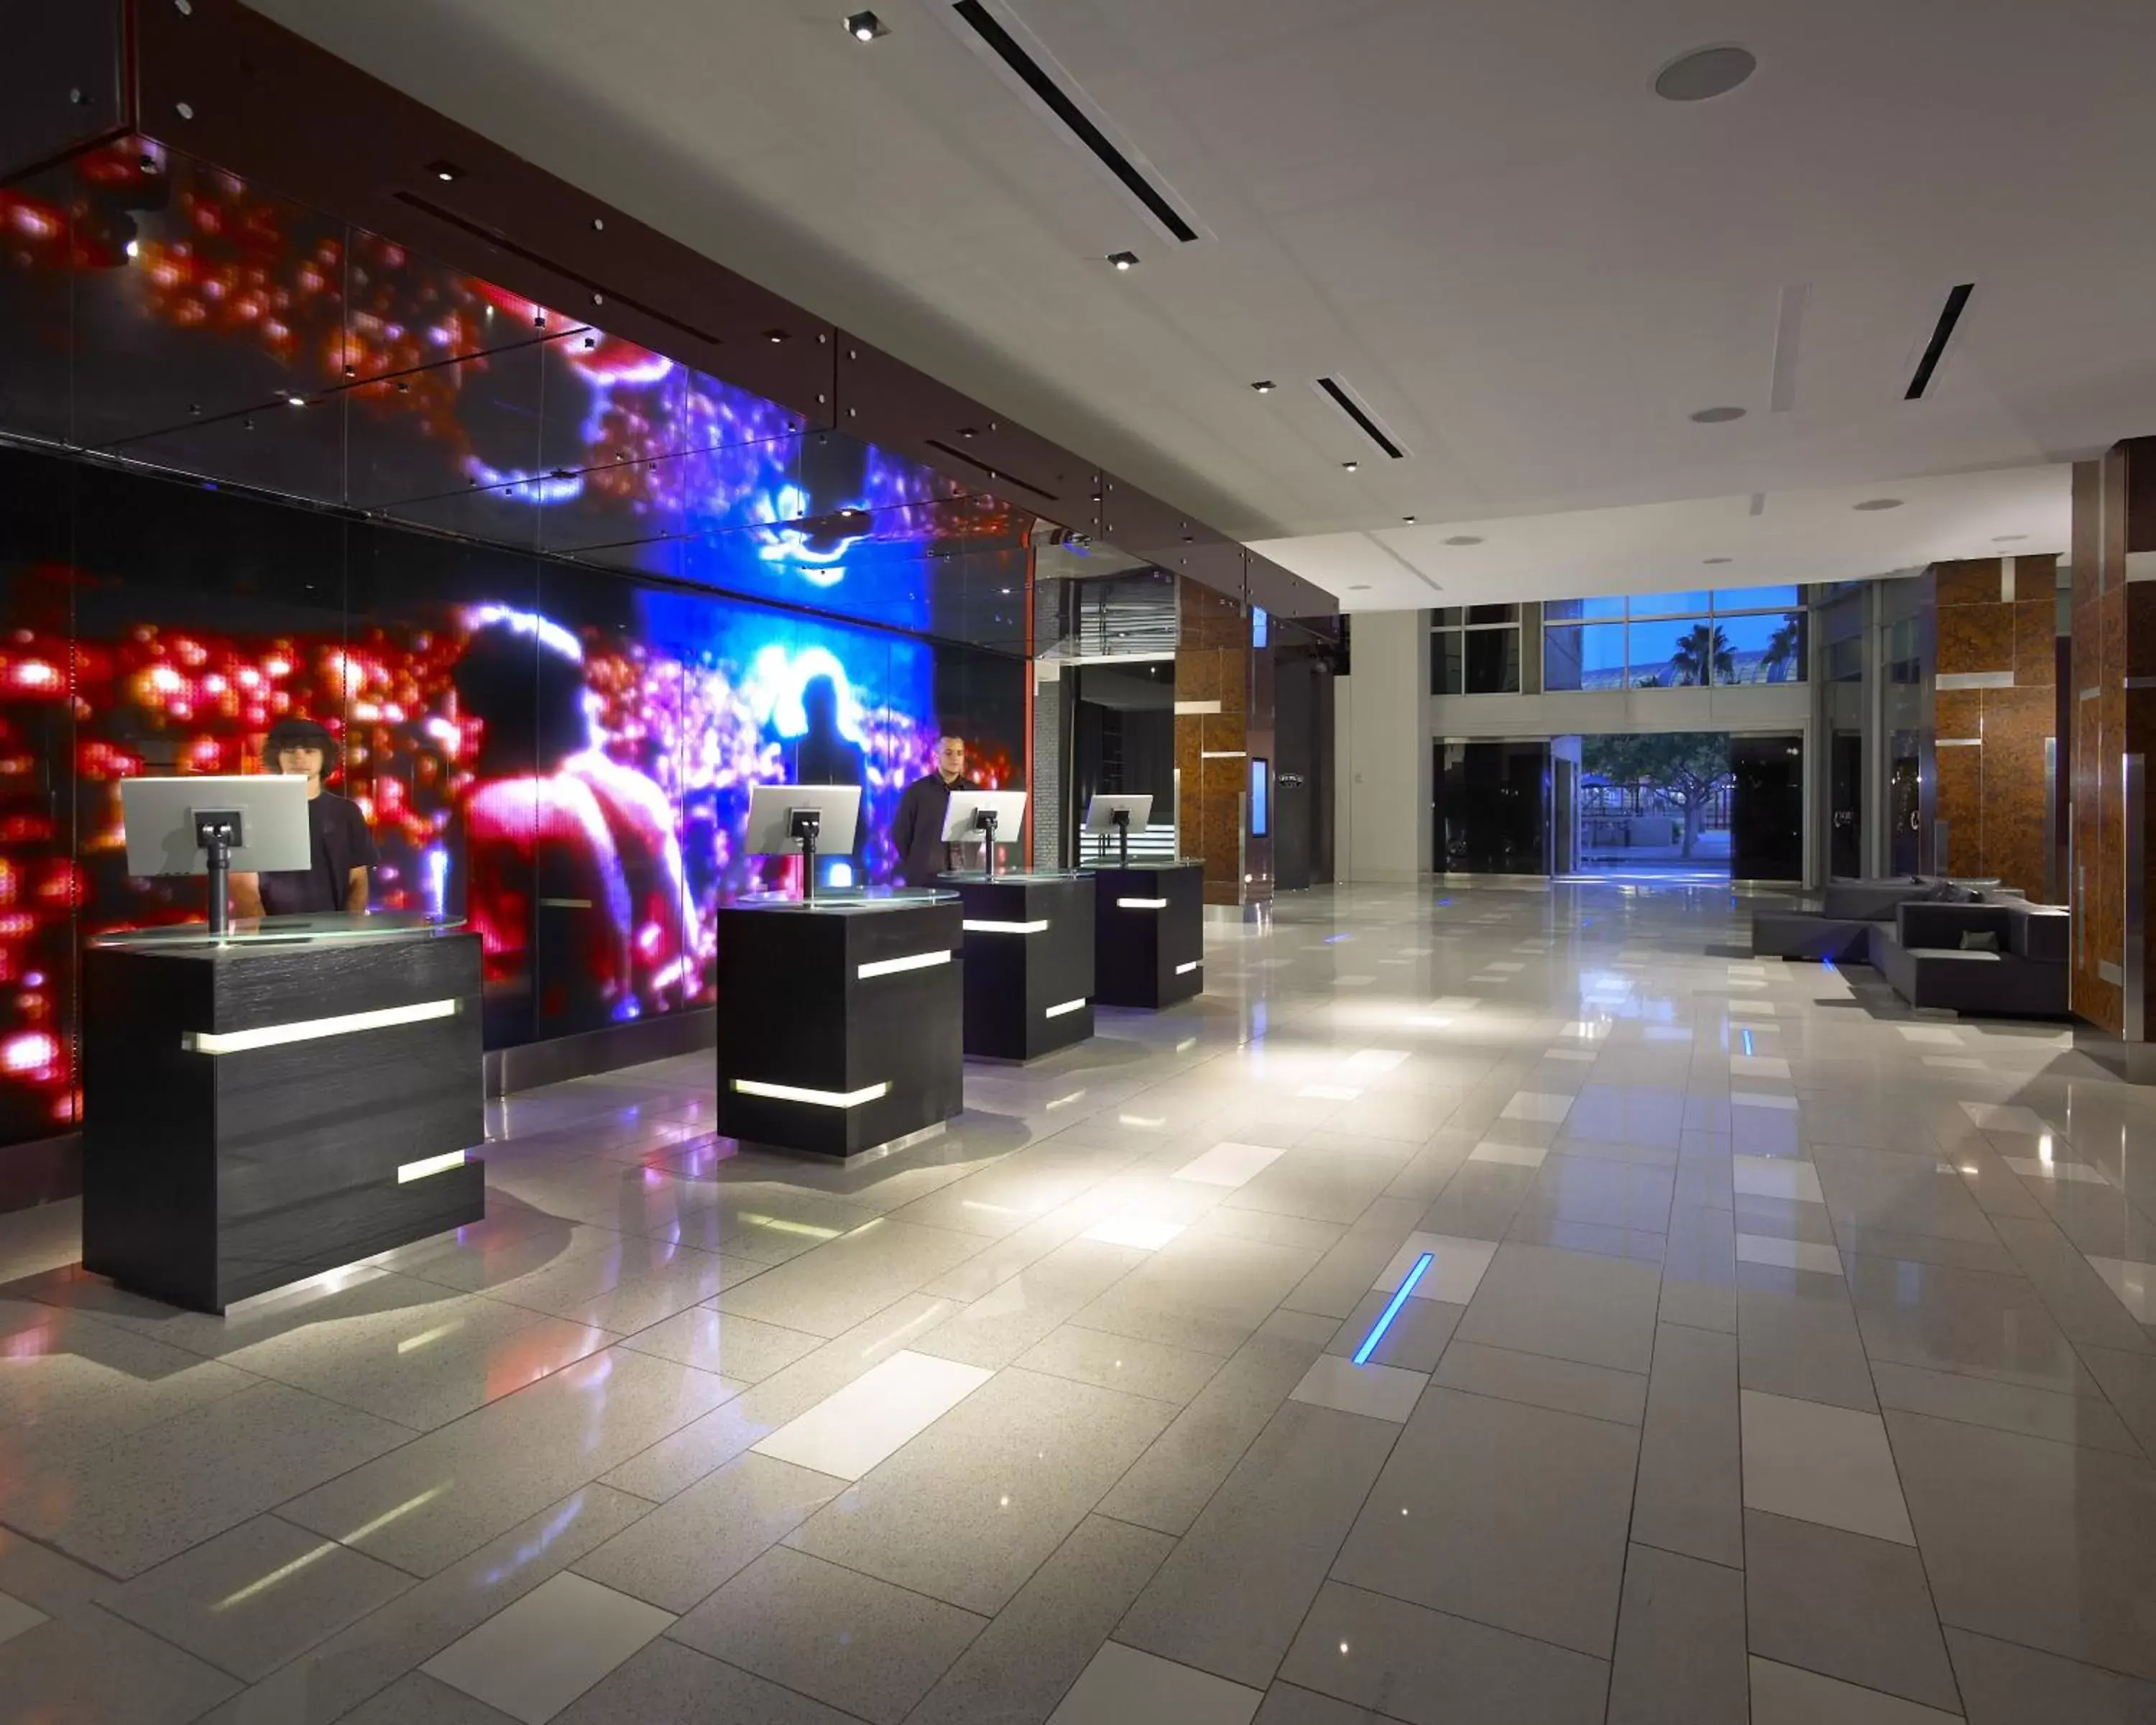 Lobby or reception in Hard Rock Hotel San Diego